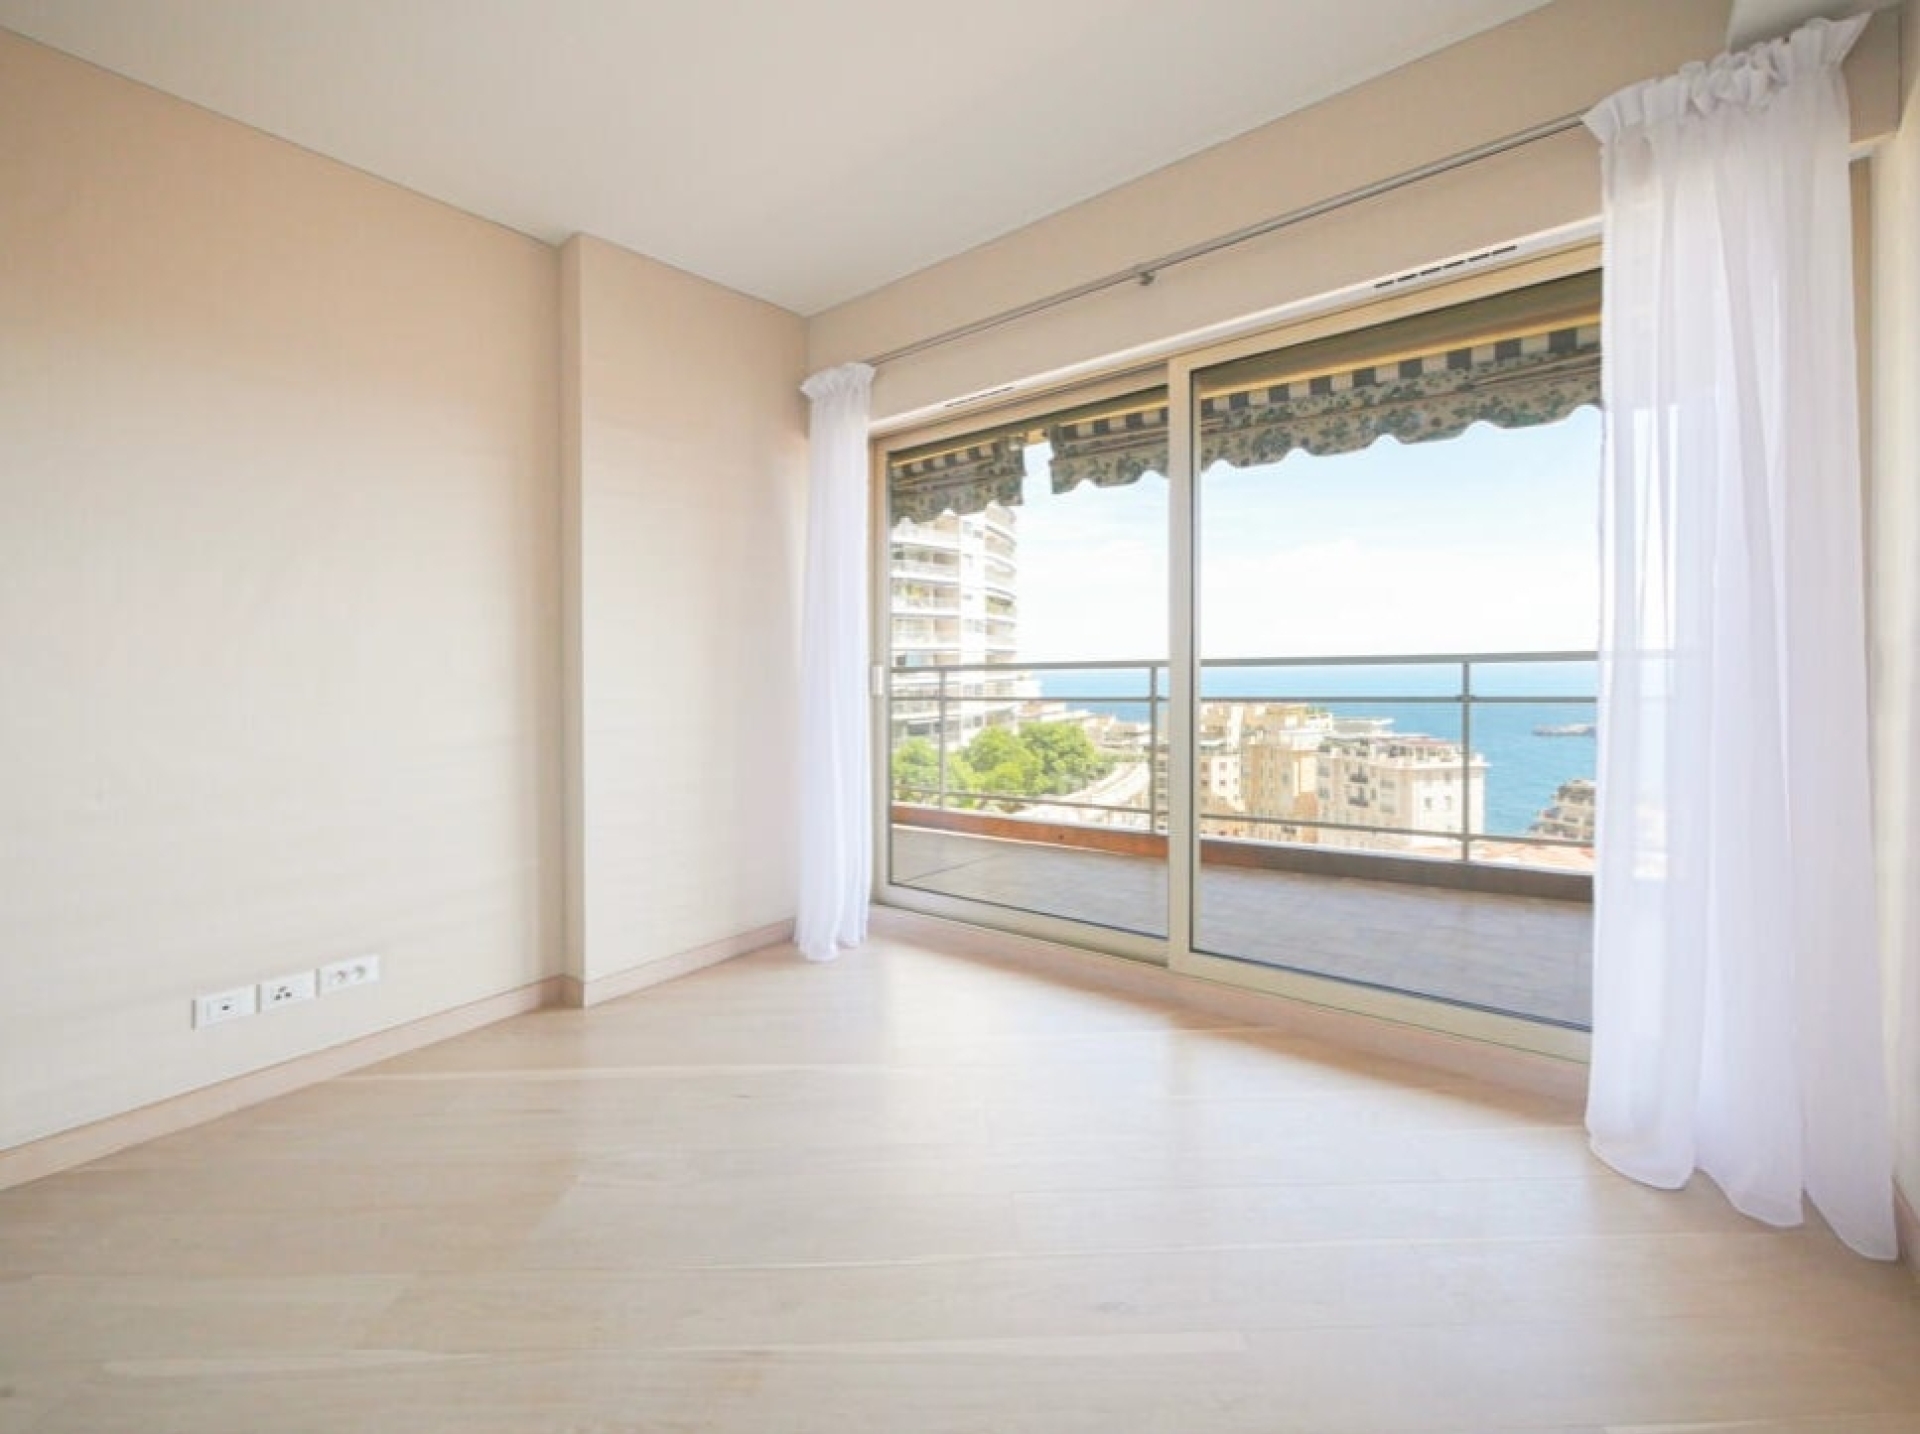 Dotta Appartement de 4 pieces a vendre - ANNONCIADE - La Rousse - Monaco - imgimage2